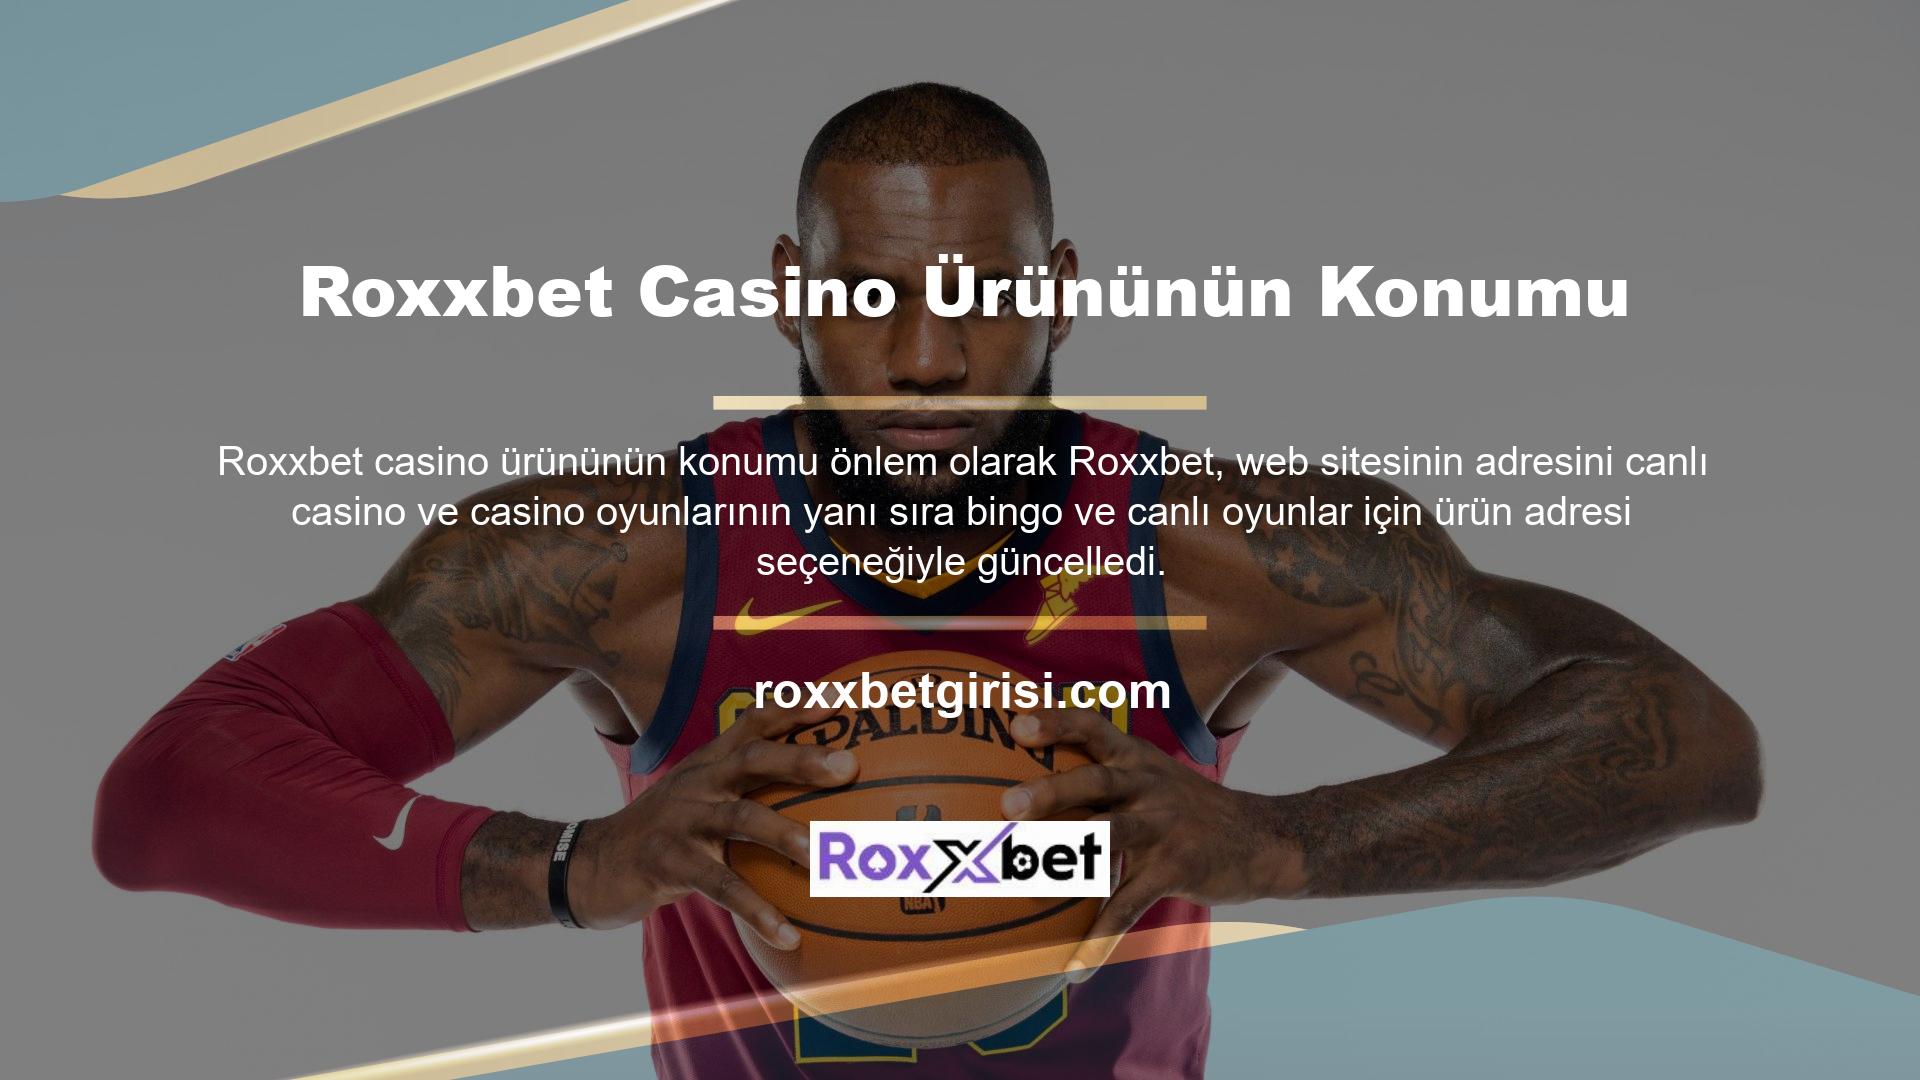 Roxxbet giriş yapmak, Casinoda oynamaya devam edebileceğiniz, eğlenceyi paylaşabileceğiniz ve herhangi bir zorluk yaşamadan para kazanabileceğiniz anlamına gelir